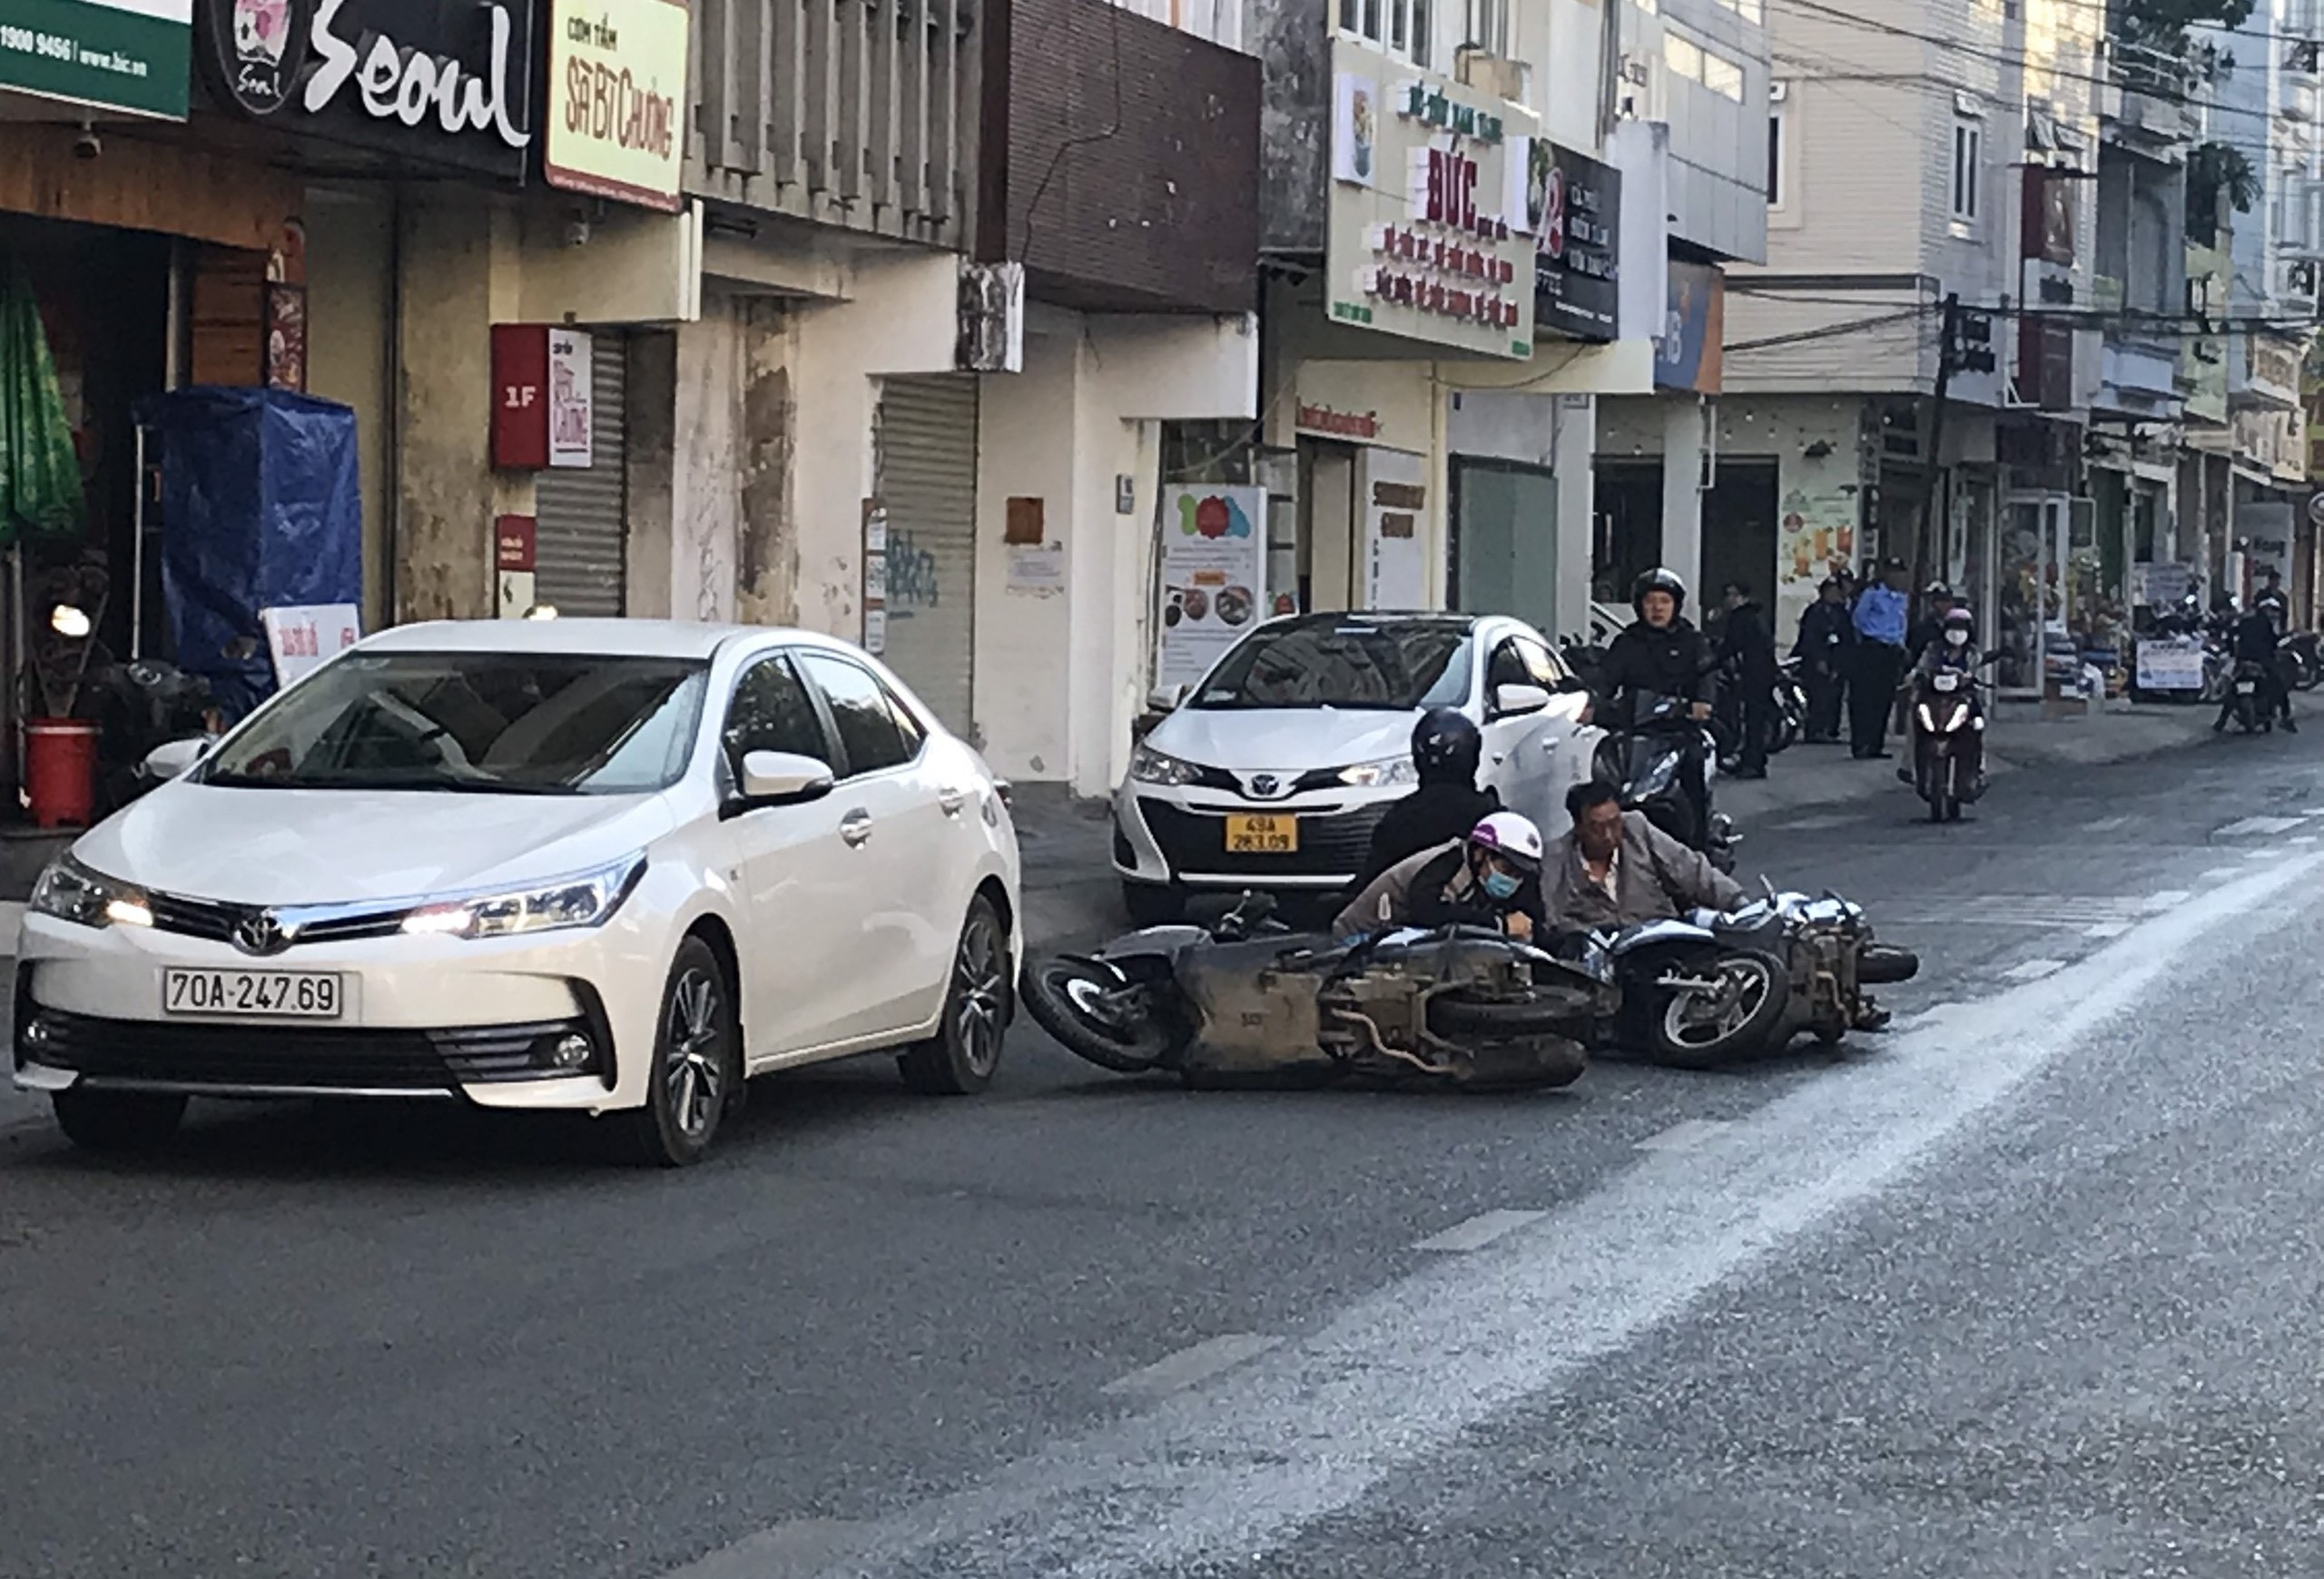 Đường phố ở Đà Lạt bị đổ dầu nhớt, hàng chục người đi xe máy bị té ngã- Ảnh 1.